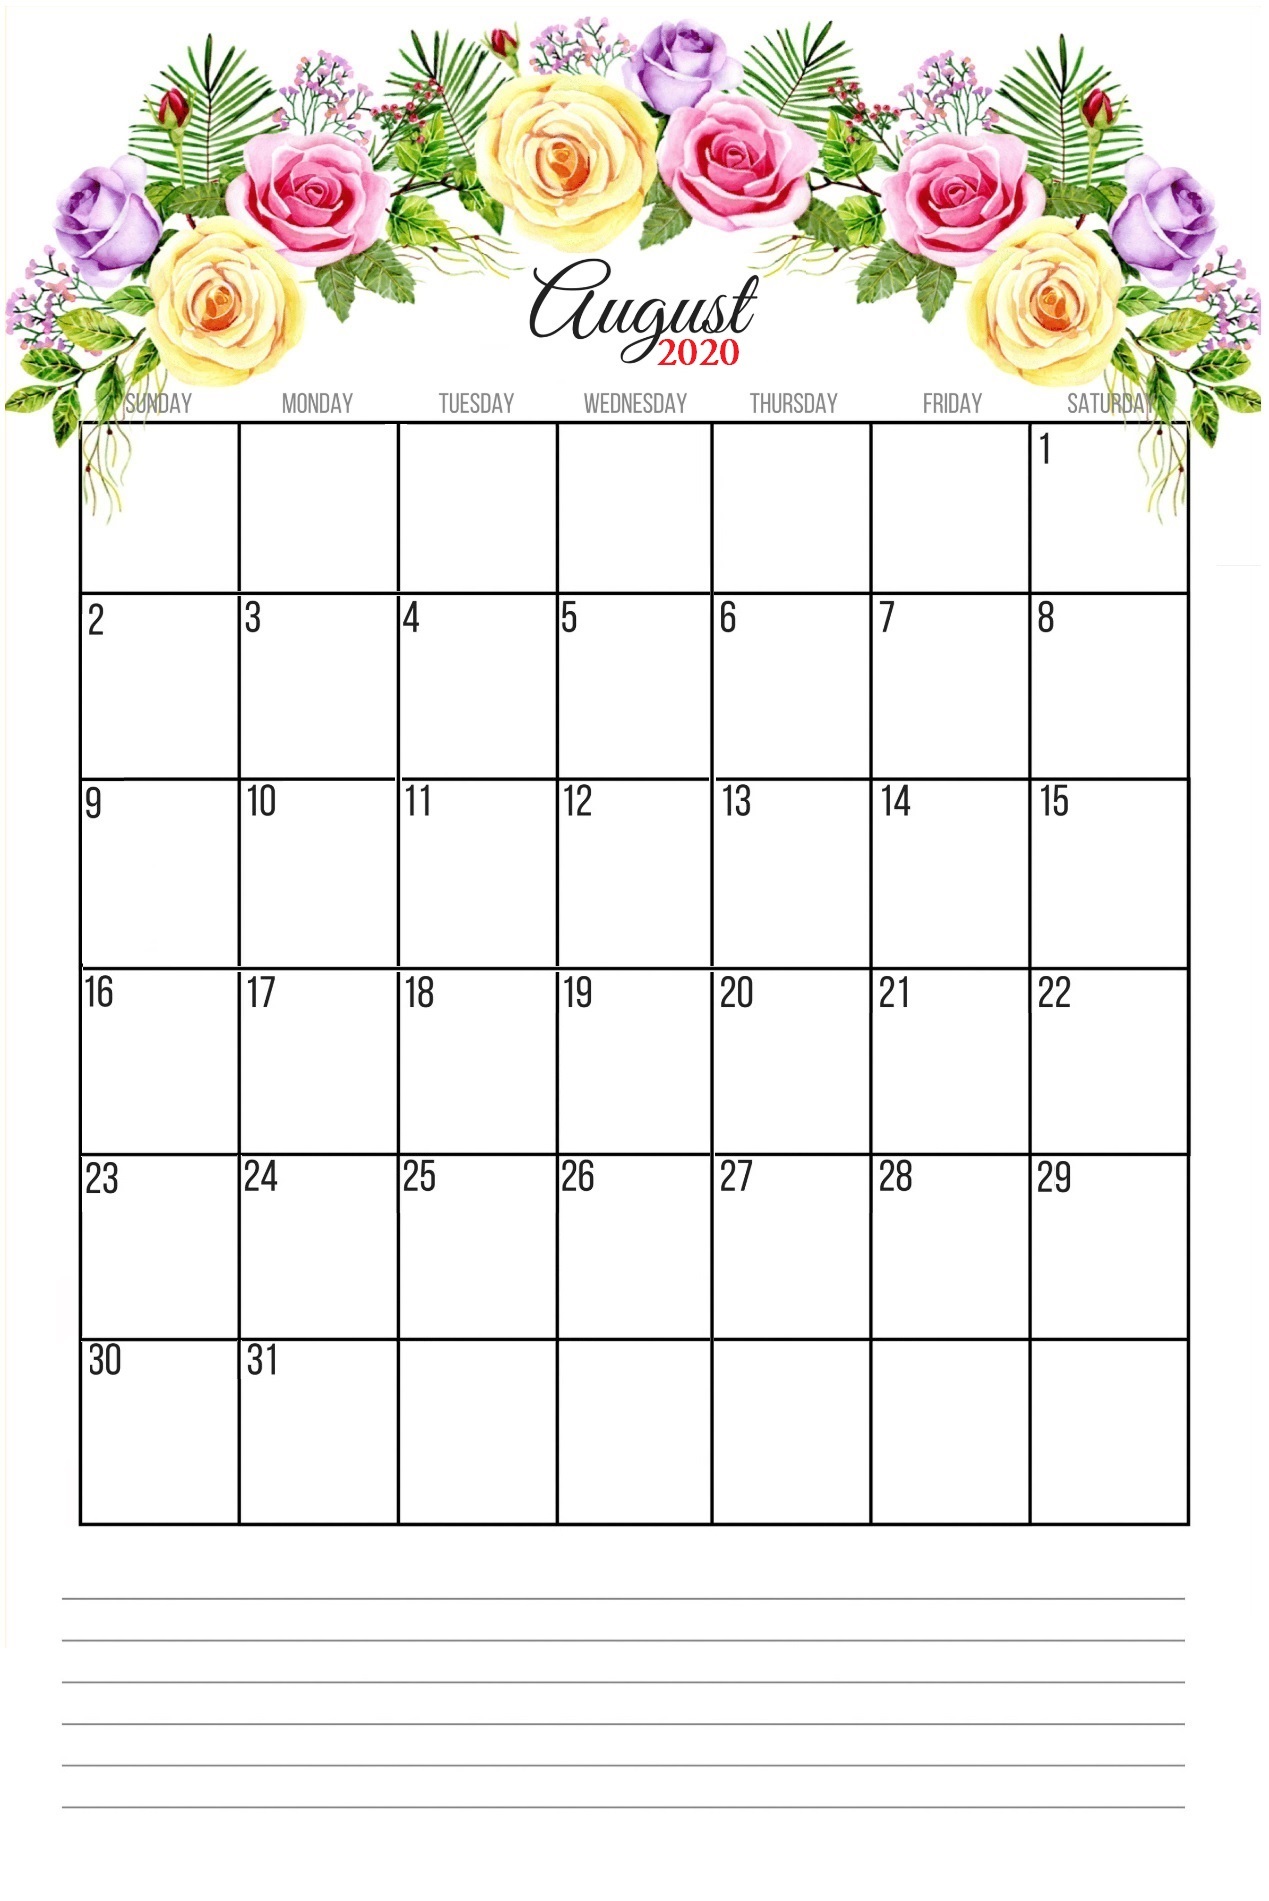 August 2020 Floral Wall Calendar